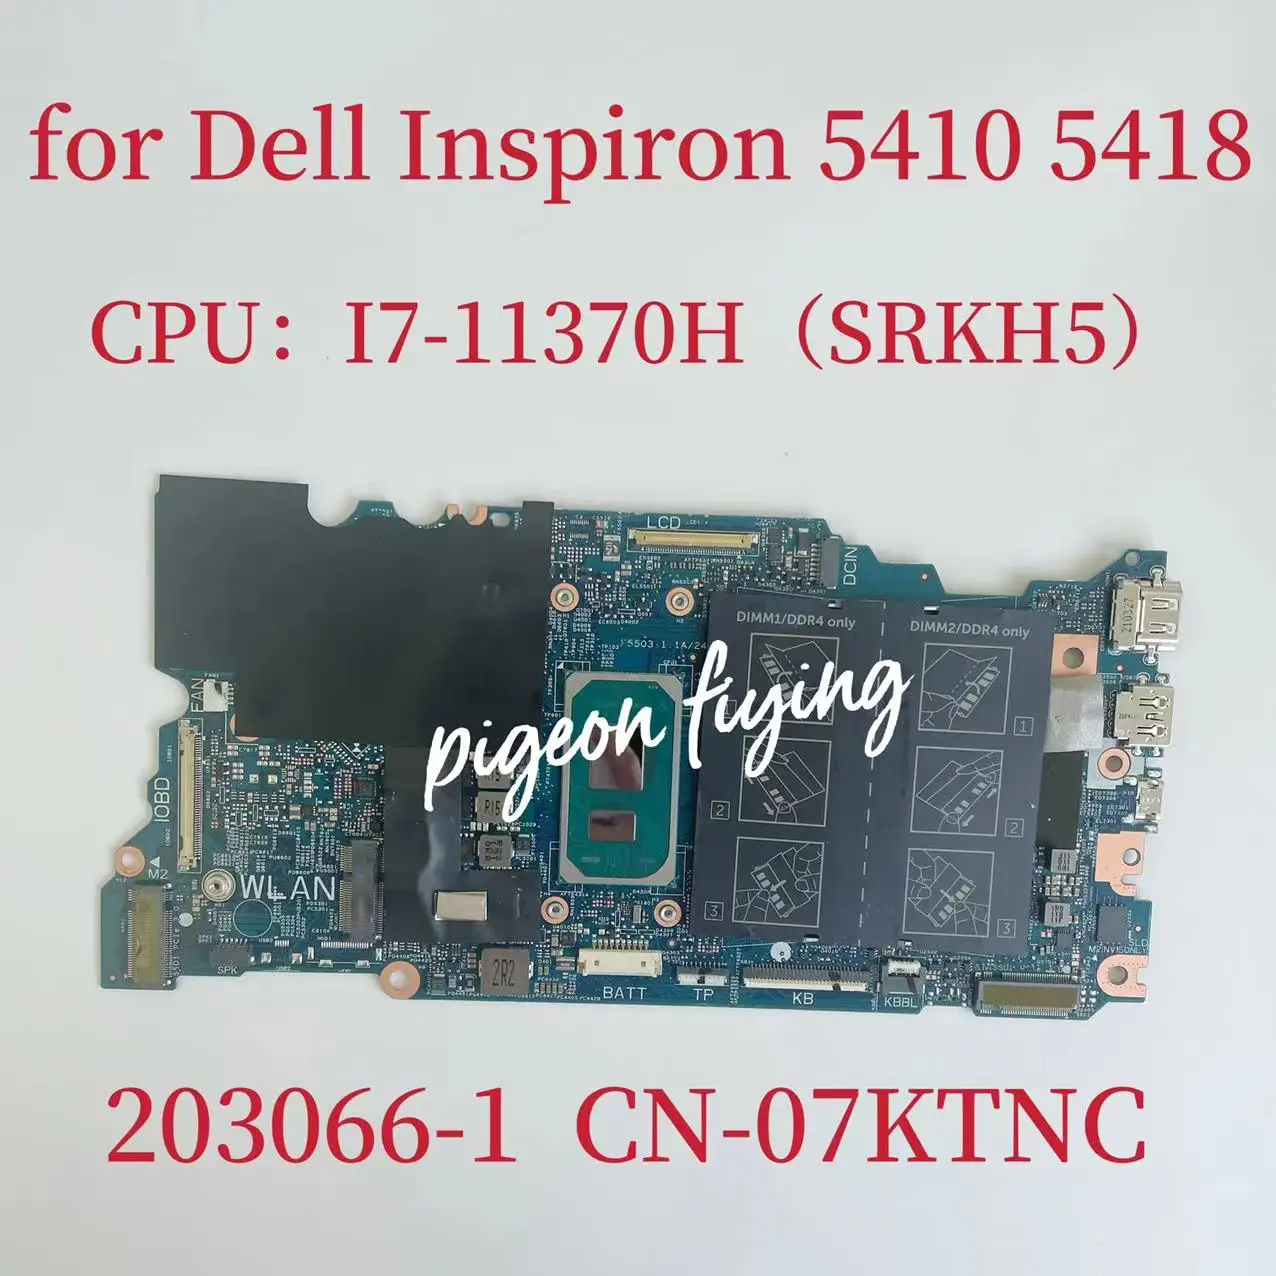 

203066-1 Mainboard For Dell Latitude 5410 5418 Laptop Motherboard CPU: I7-11370H SRKH5 DDR4 CN-07KTNC 07KTNC 7KTNC 100% Test OK